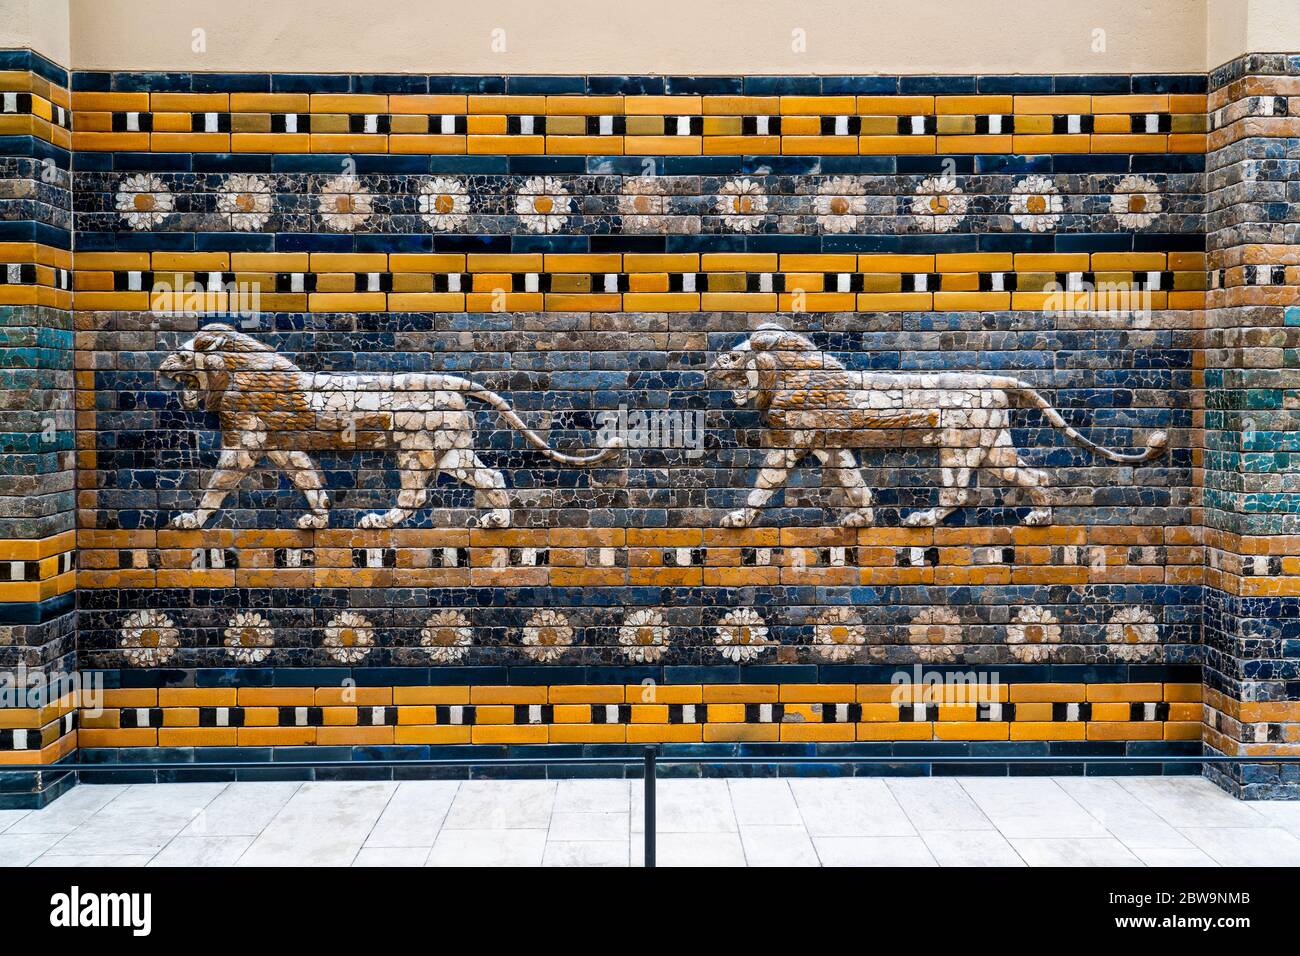 Lions de la voie de la Processionnelle, porte d'Ishtar, Musée de Pergamon, Île des Musées, Berlin, Allemagne, Europe, Europe de l'Ouest Banque D'Images